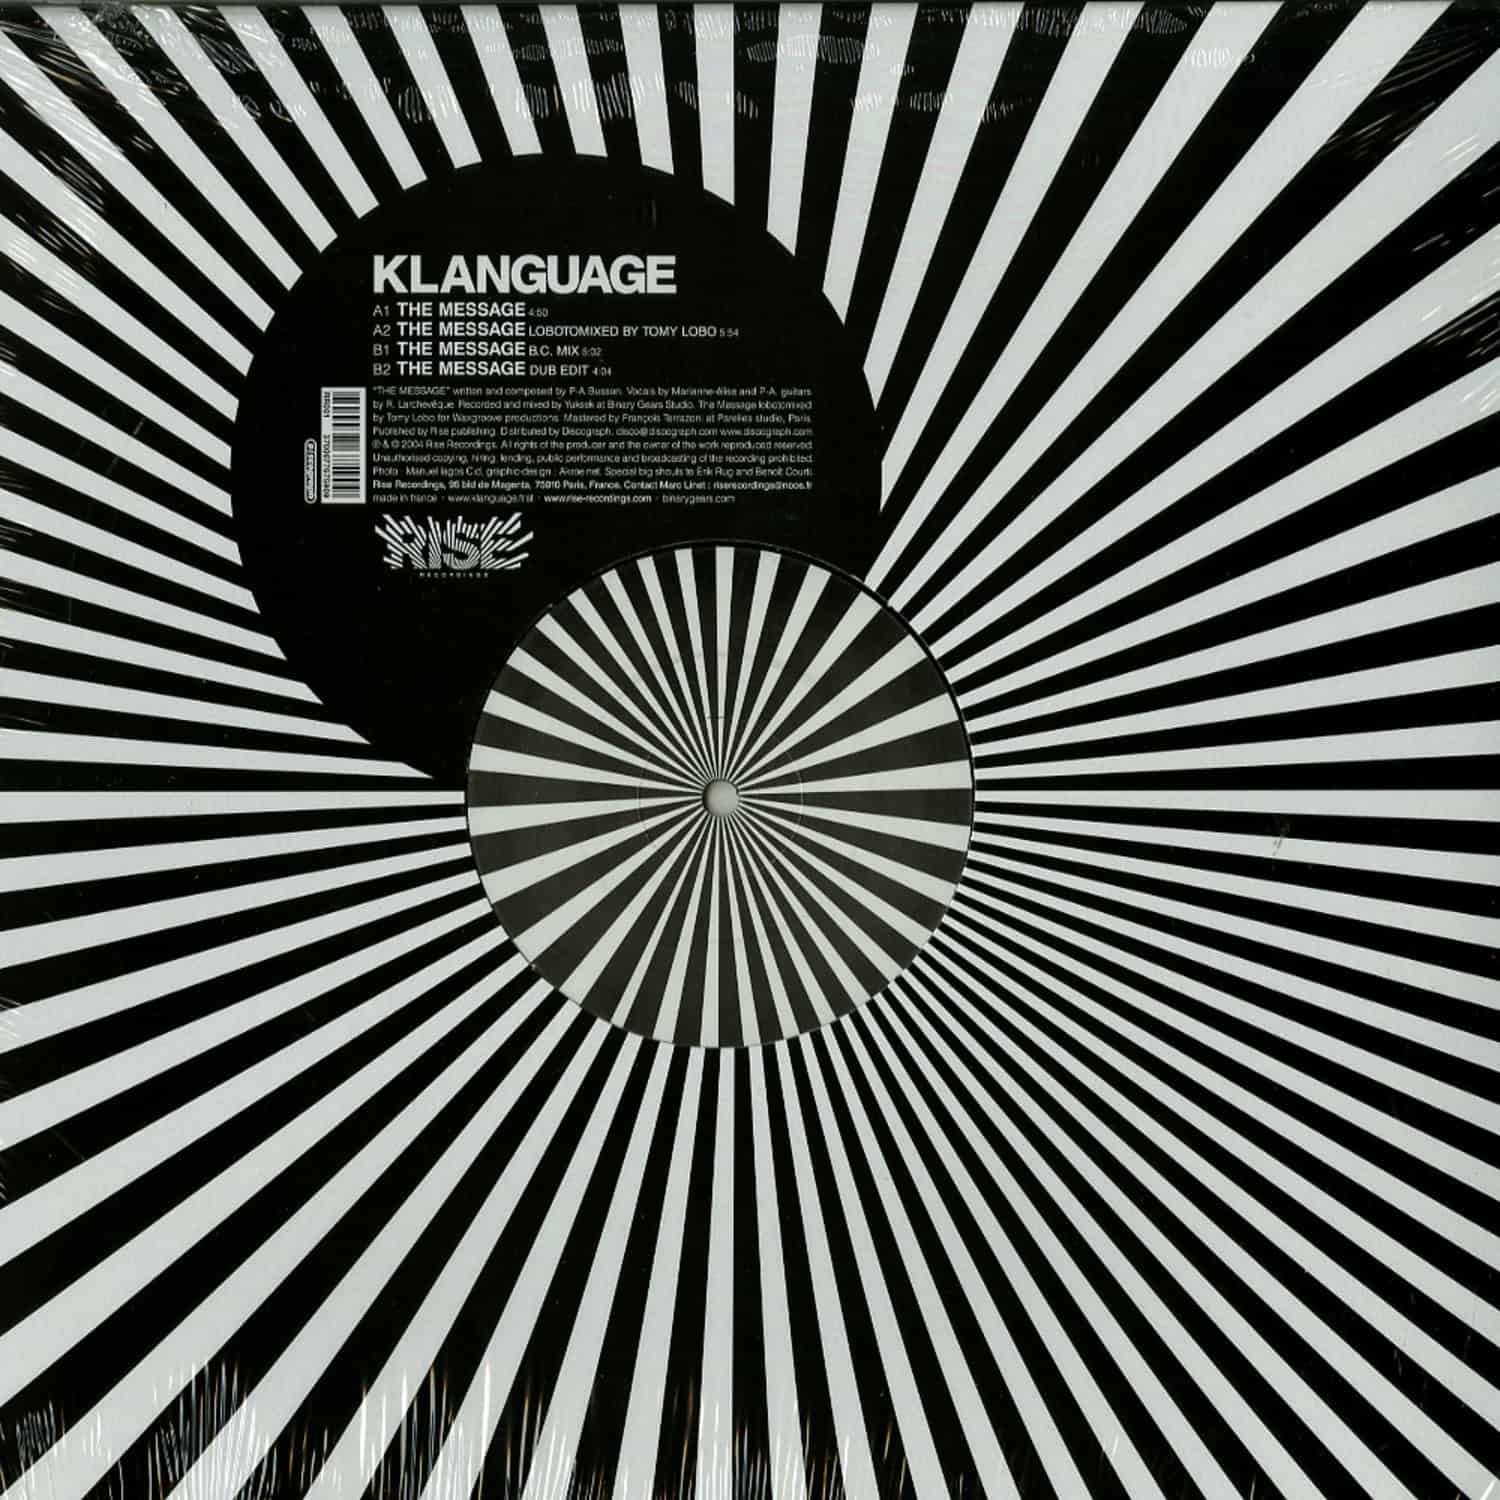 Klanguage - THE MESSAGE